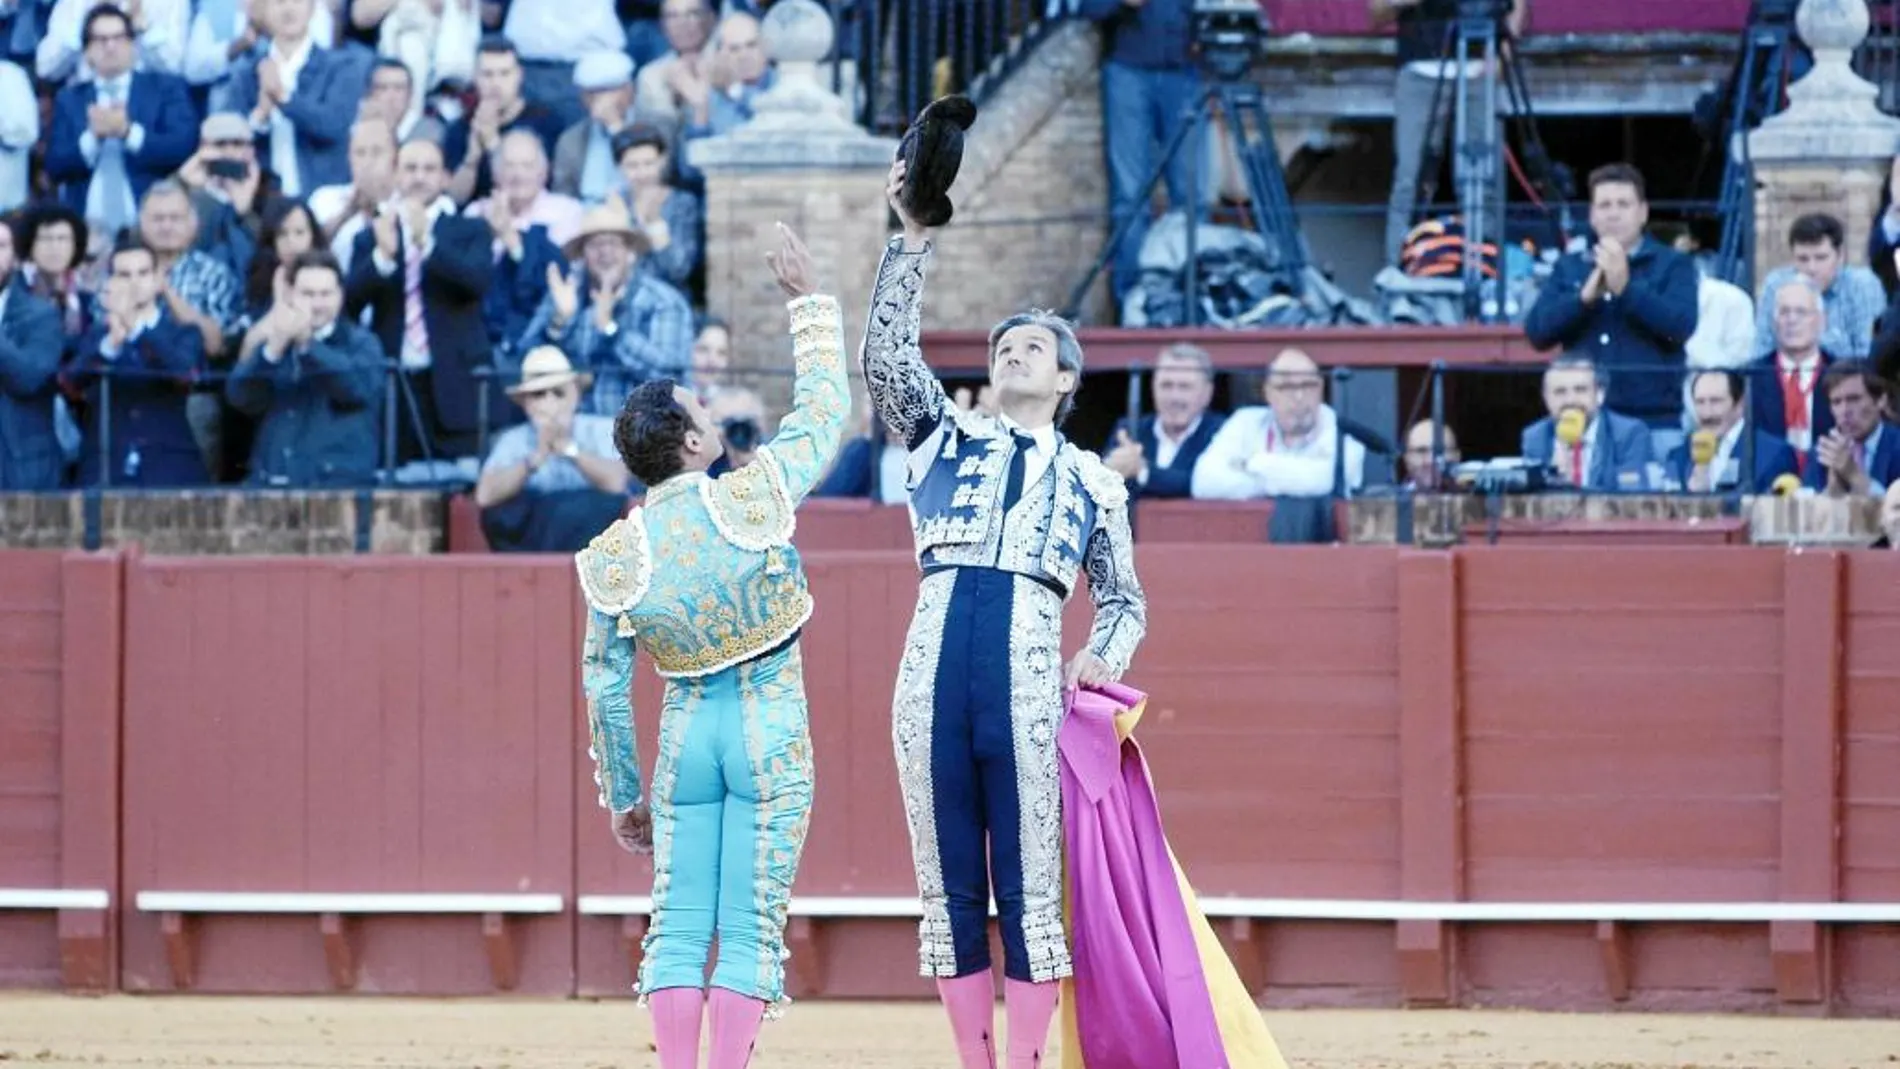 Jose Manuel Calvo Montoliú y su matador Antonio Ferrera brindan al cielo de Sevilla tras parear juntos en el cuarto toro